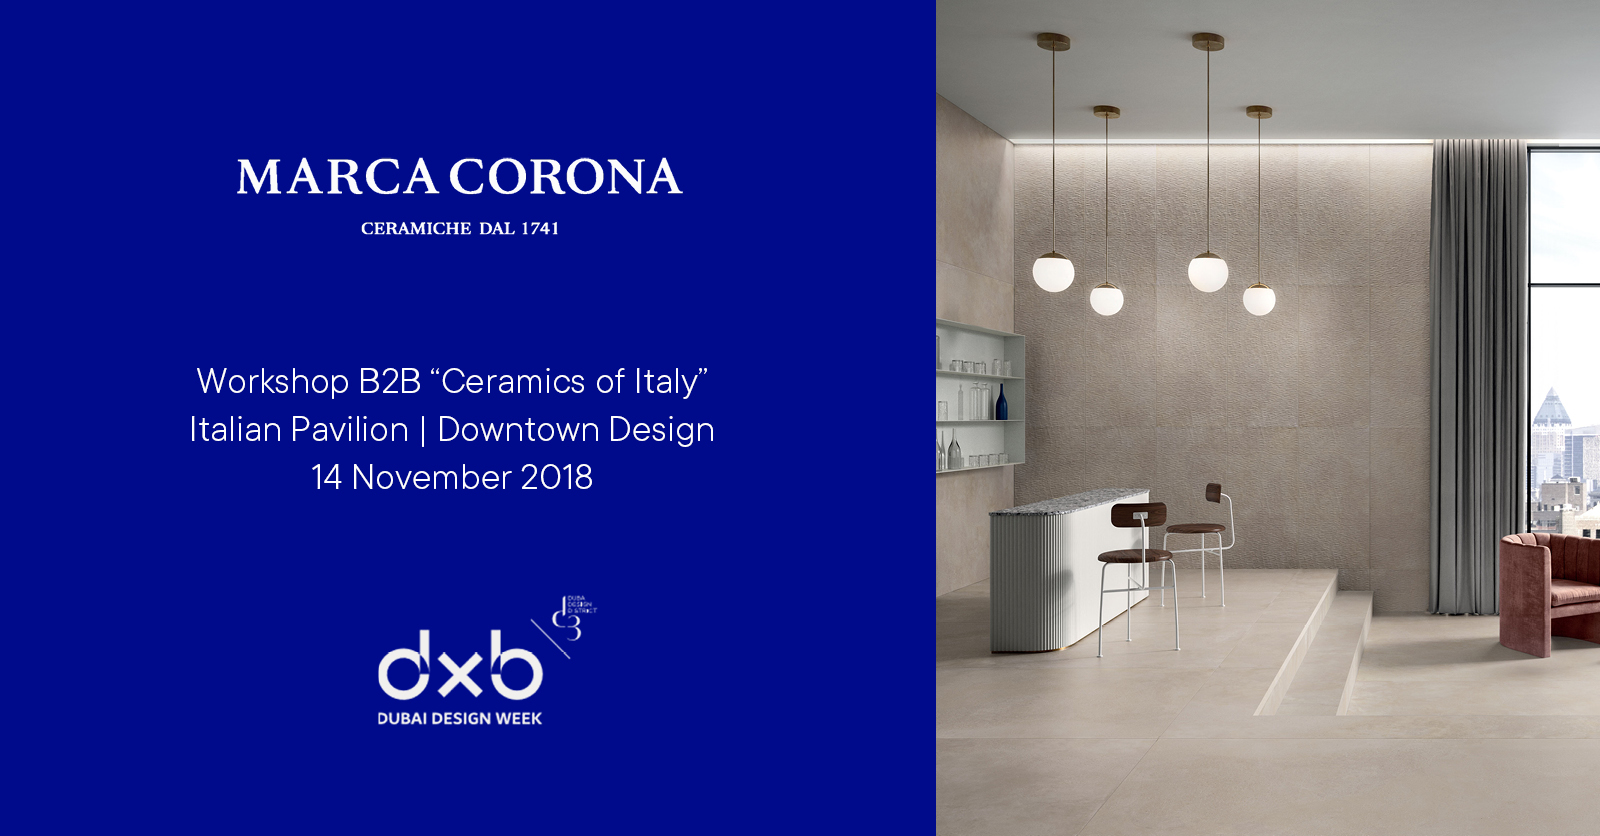 Marca Corona Dubai Design Week 2018